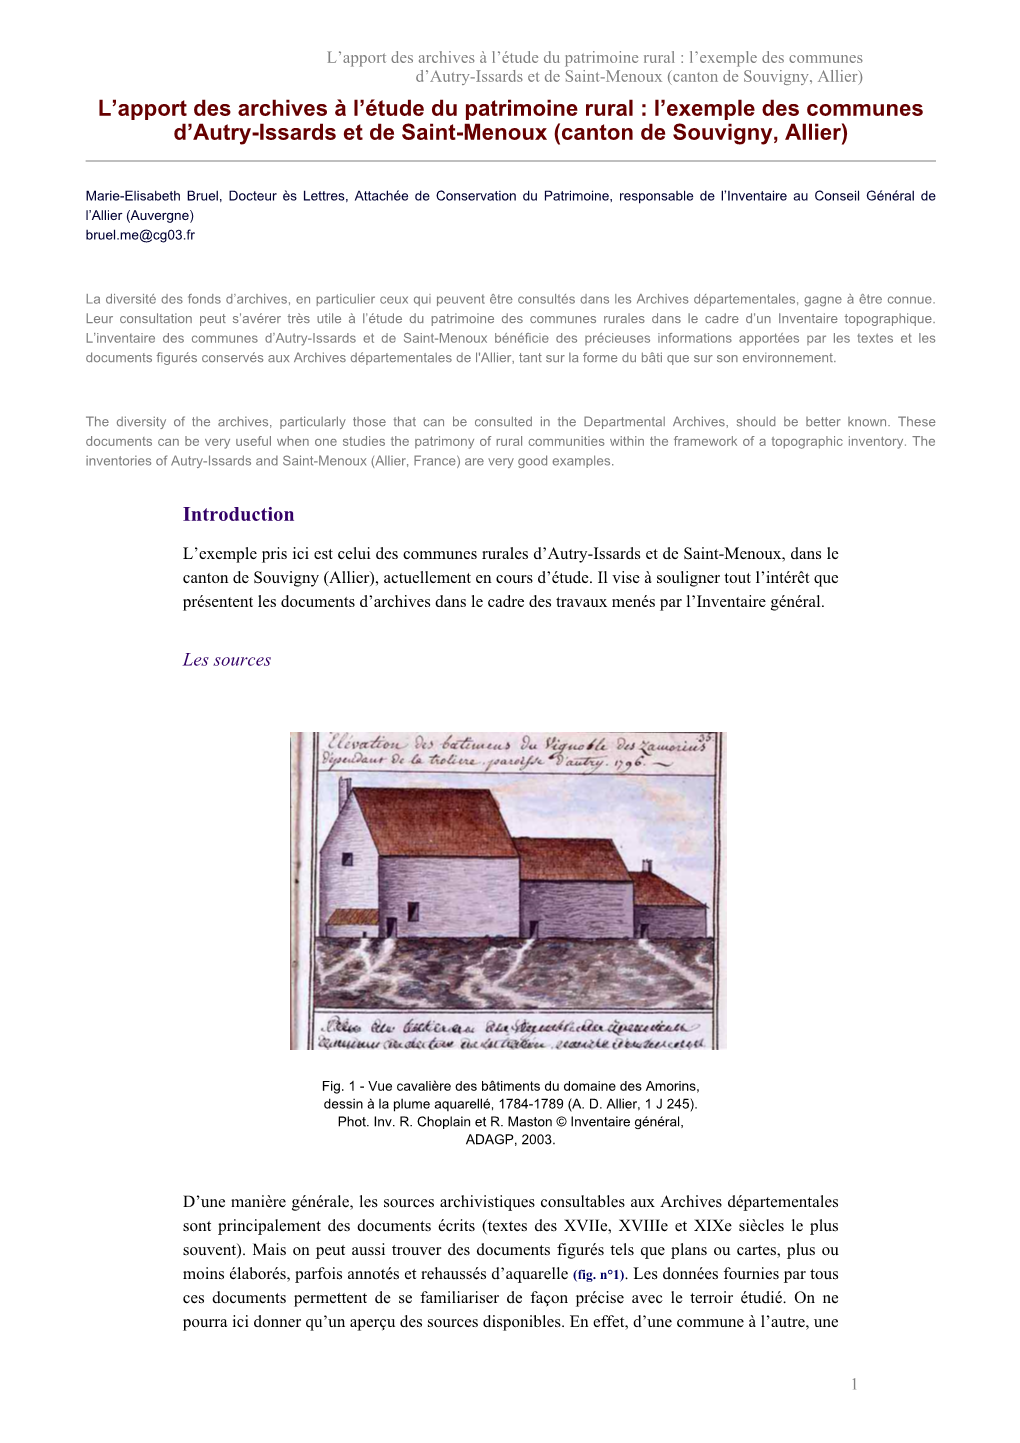 L'exemple Des Communes D'autry-Issards Et De Saint-Menoux